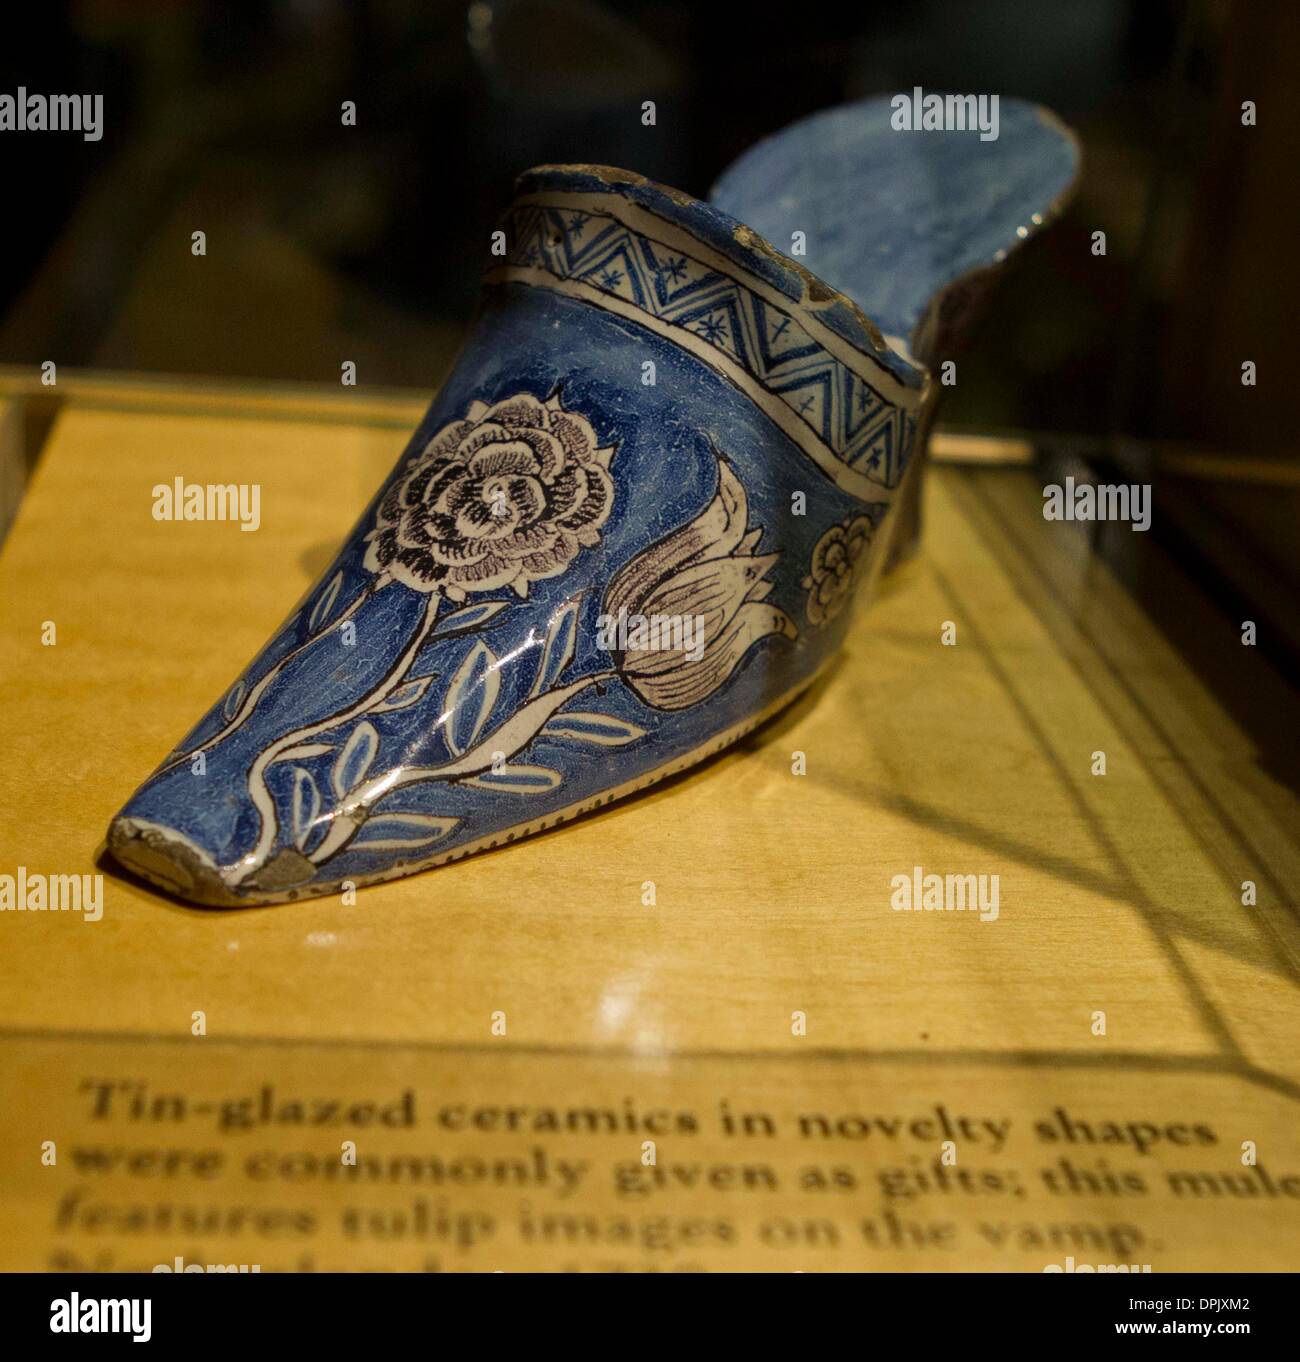 Toronto. 15 gennaio, 2014. Foto scattata a gennaio 14, 2014 mostra Paesi Bassi' scarpa in ceramica realizzati nel 1730 a Bata Shoe Museum di Toronto, Canada. Come uno dei più grandi musei di scarpe in tutto il mondo, Il Bata Shoe Museum raccoglie più di 12.000 paia di scarpe. © Zou Zheng/Xinhua/Alamy Live News Foto Stock